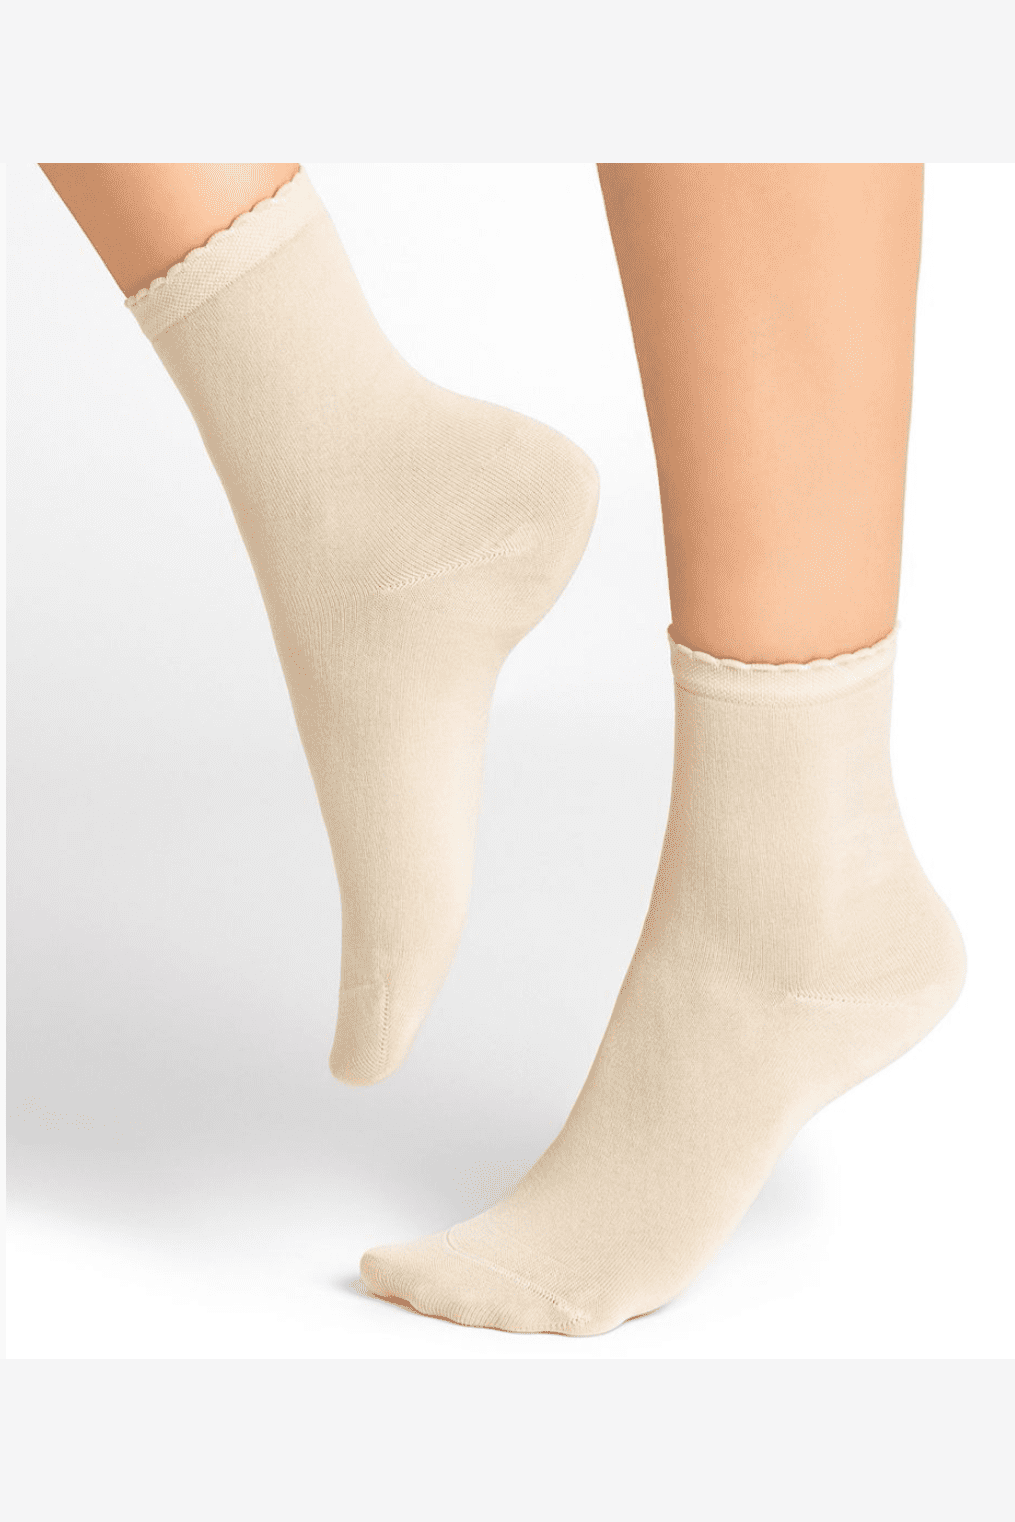 BLEUFORET Crinkle Top Socks 6401